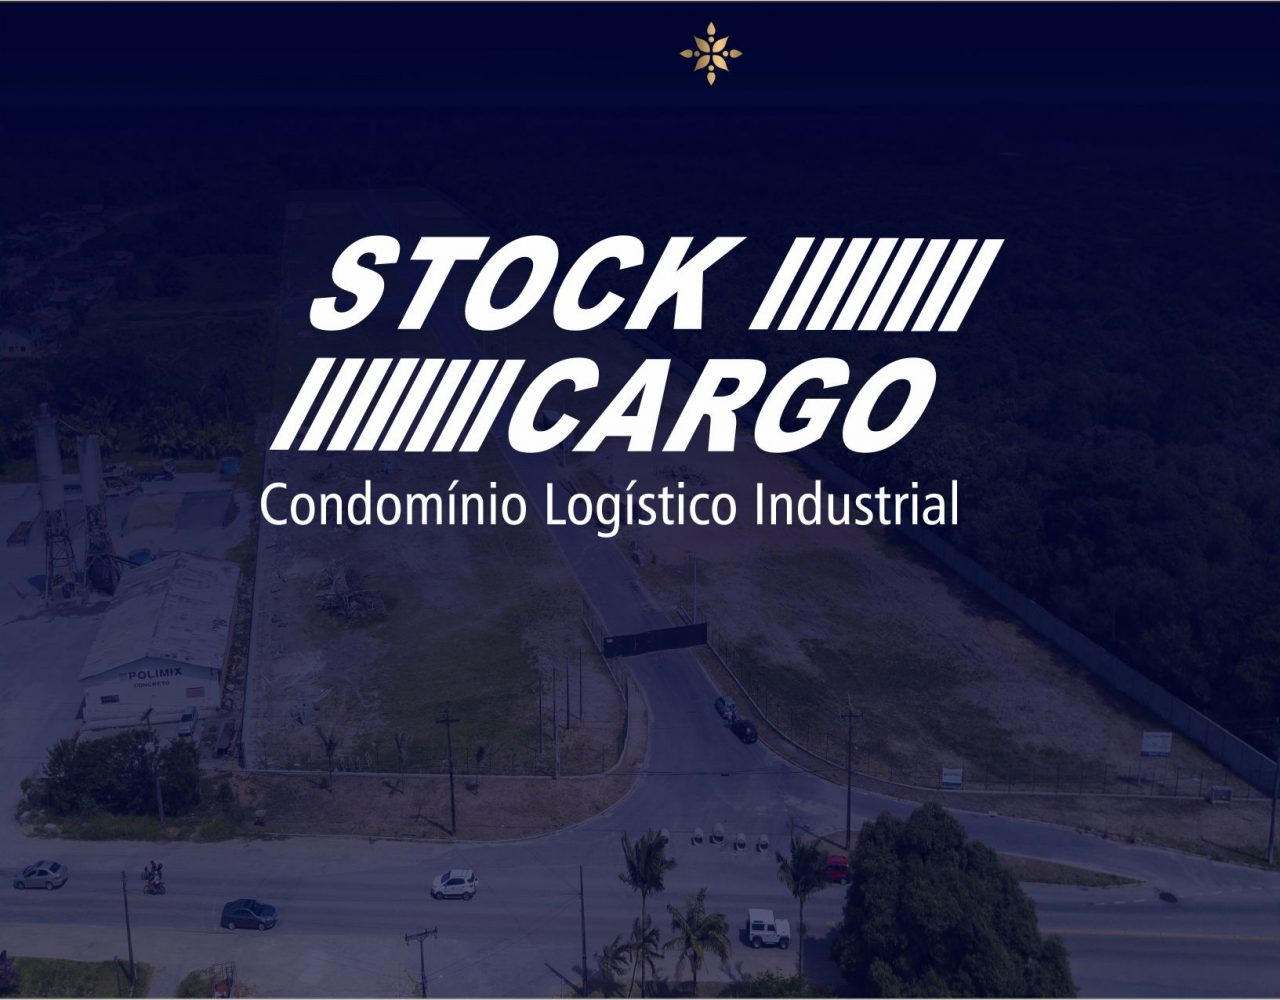 Loteamento Industrial Stock Cargo